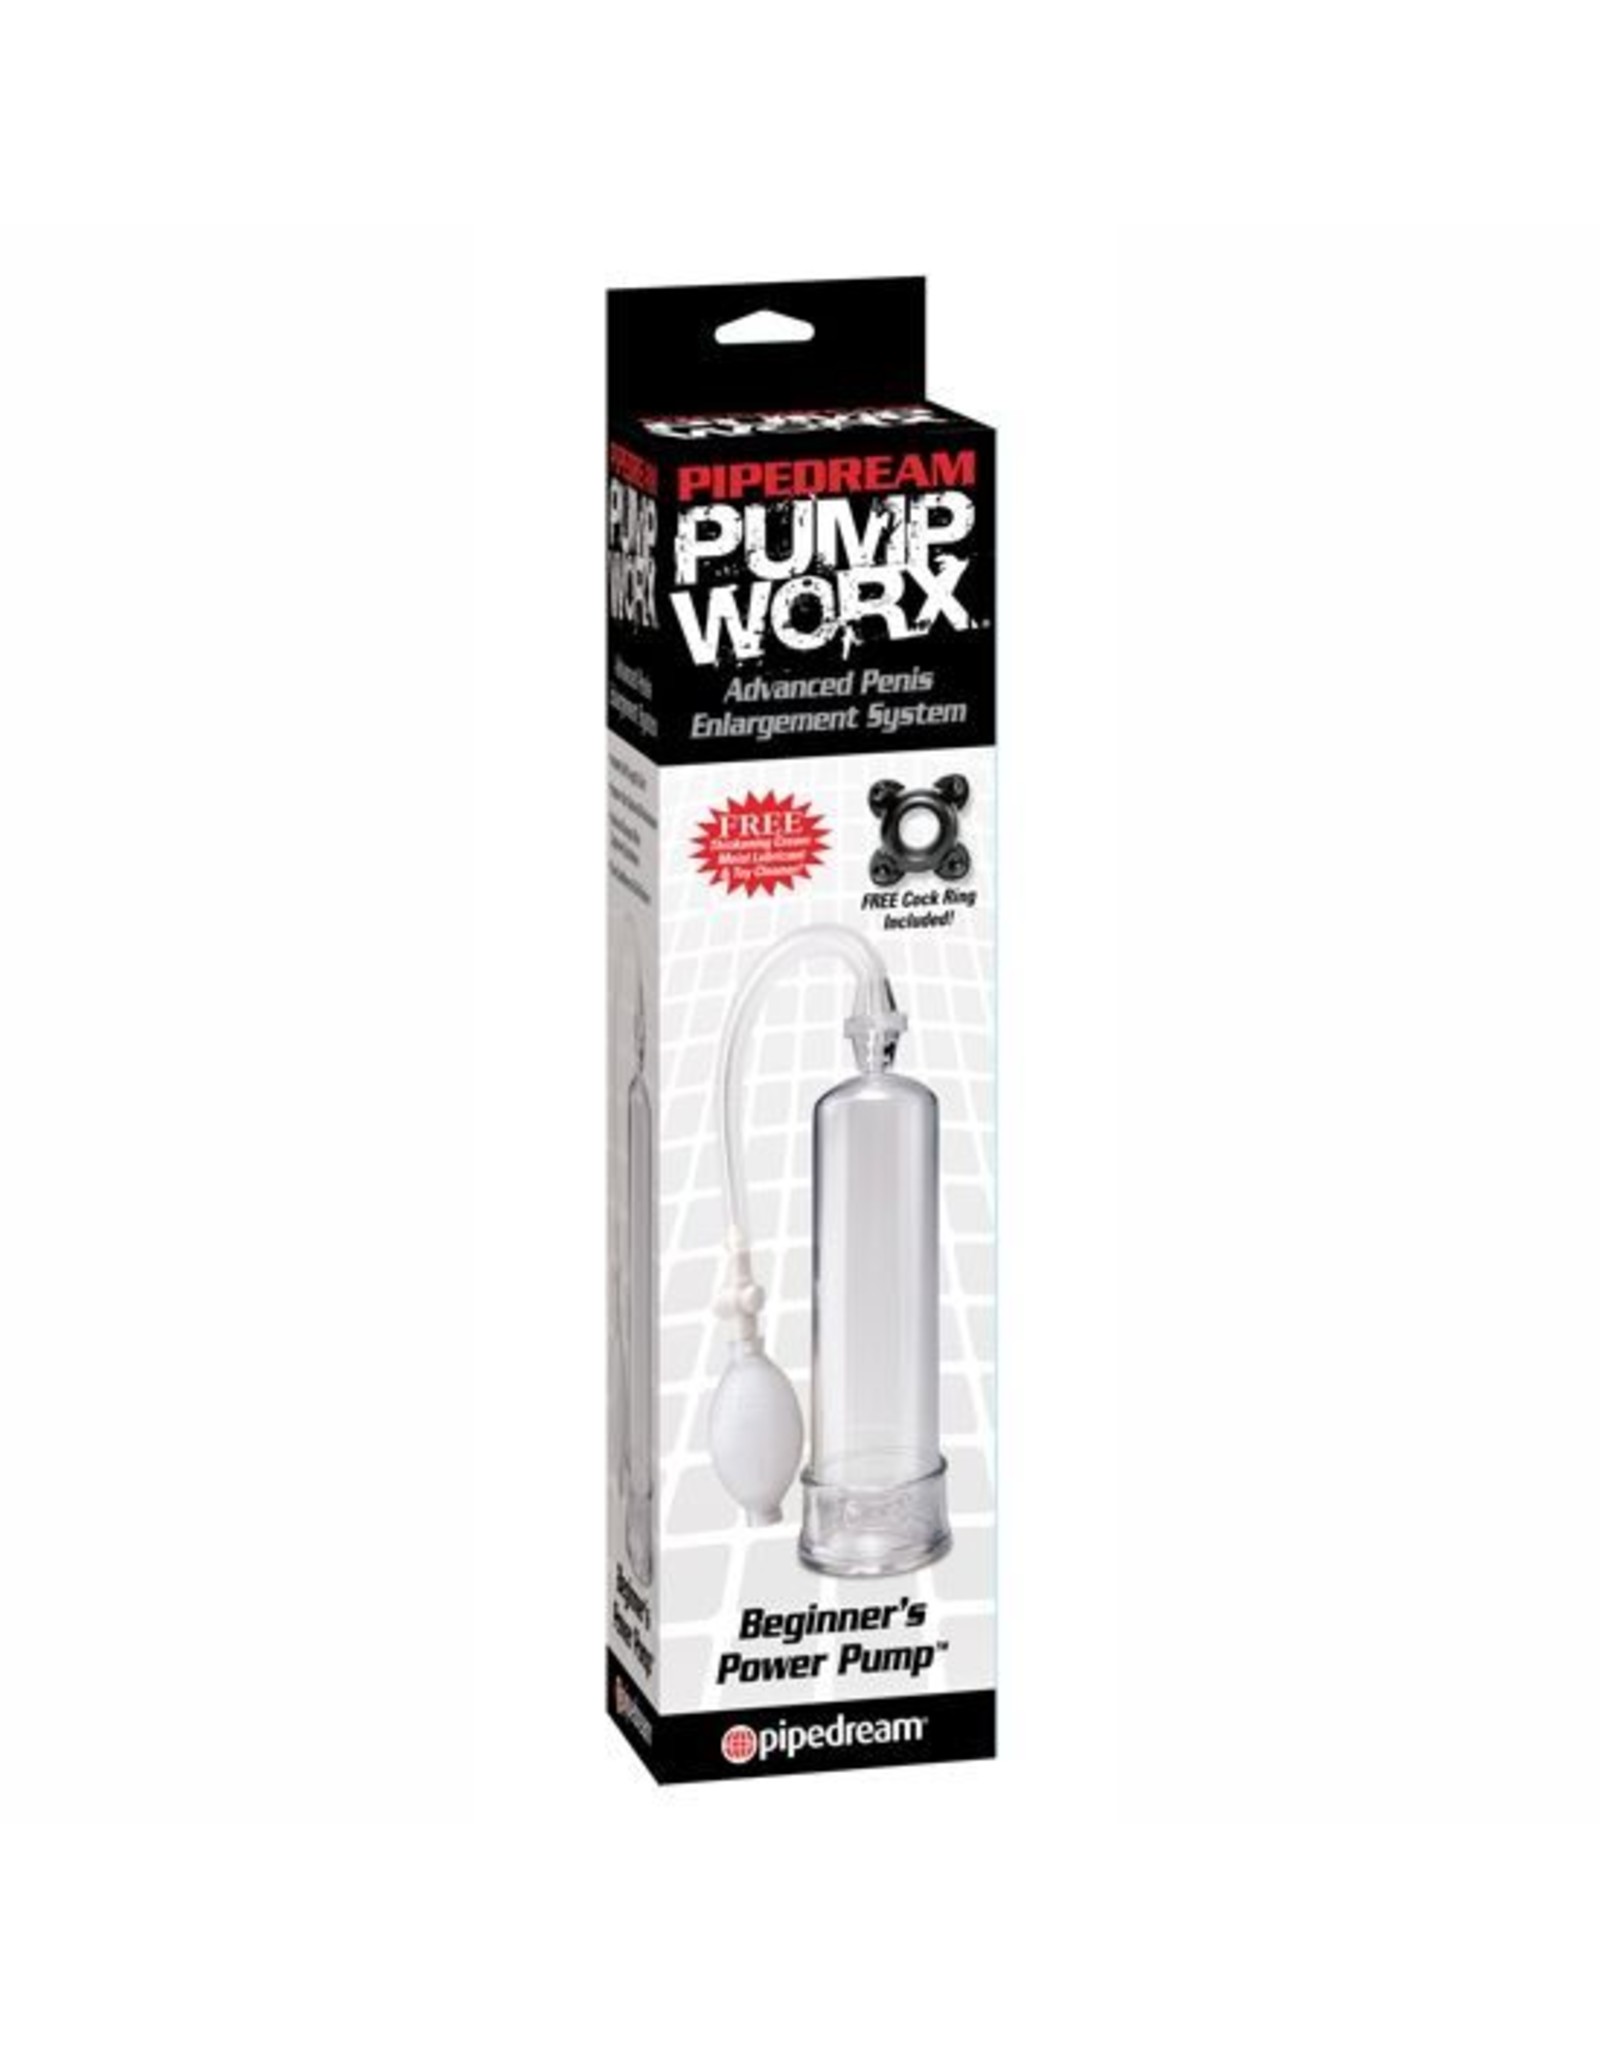 Pump Worx Beginners Power Pump transparent